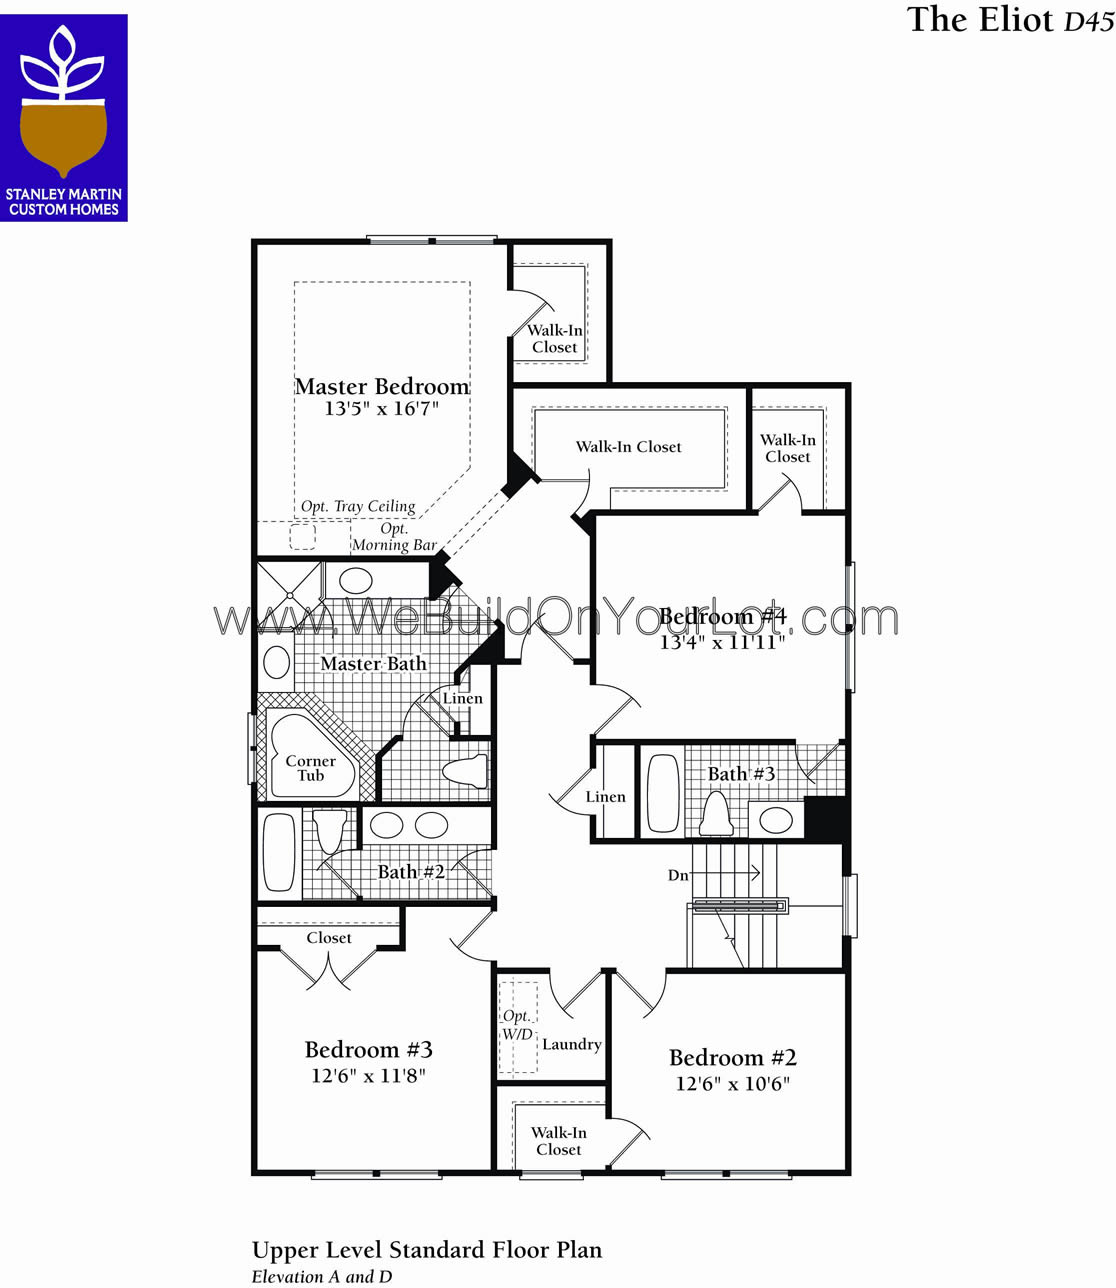 Eliot Upper Level Floor Plan Stanley Martin Custom Homes